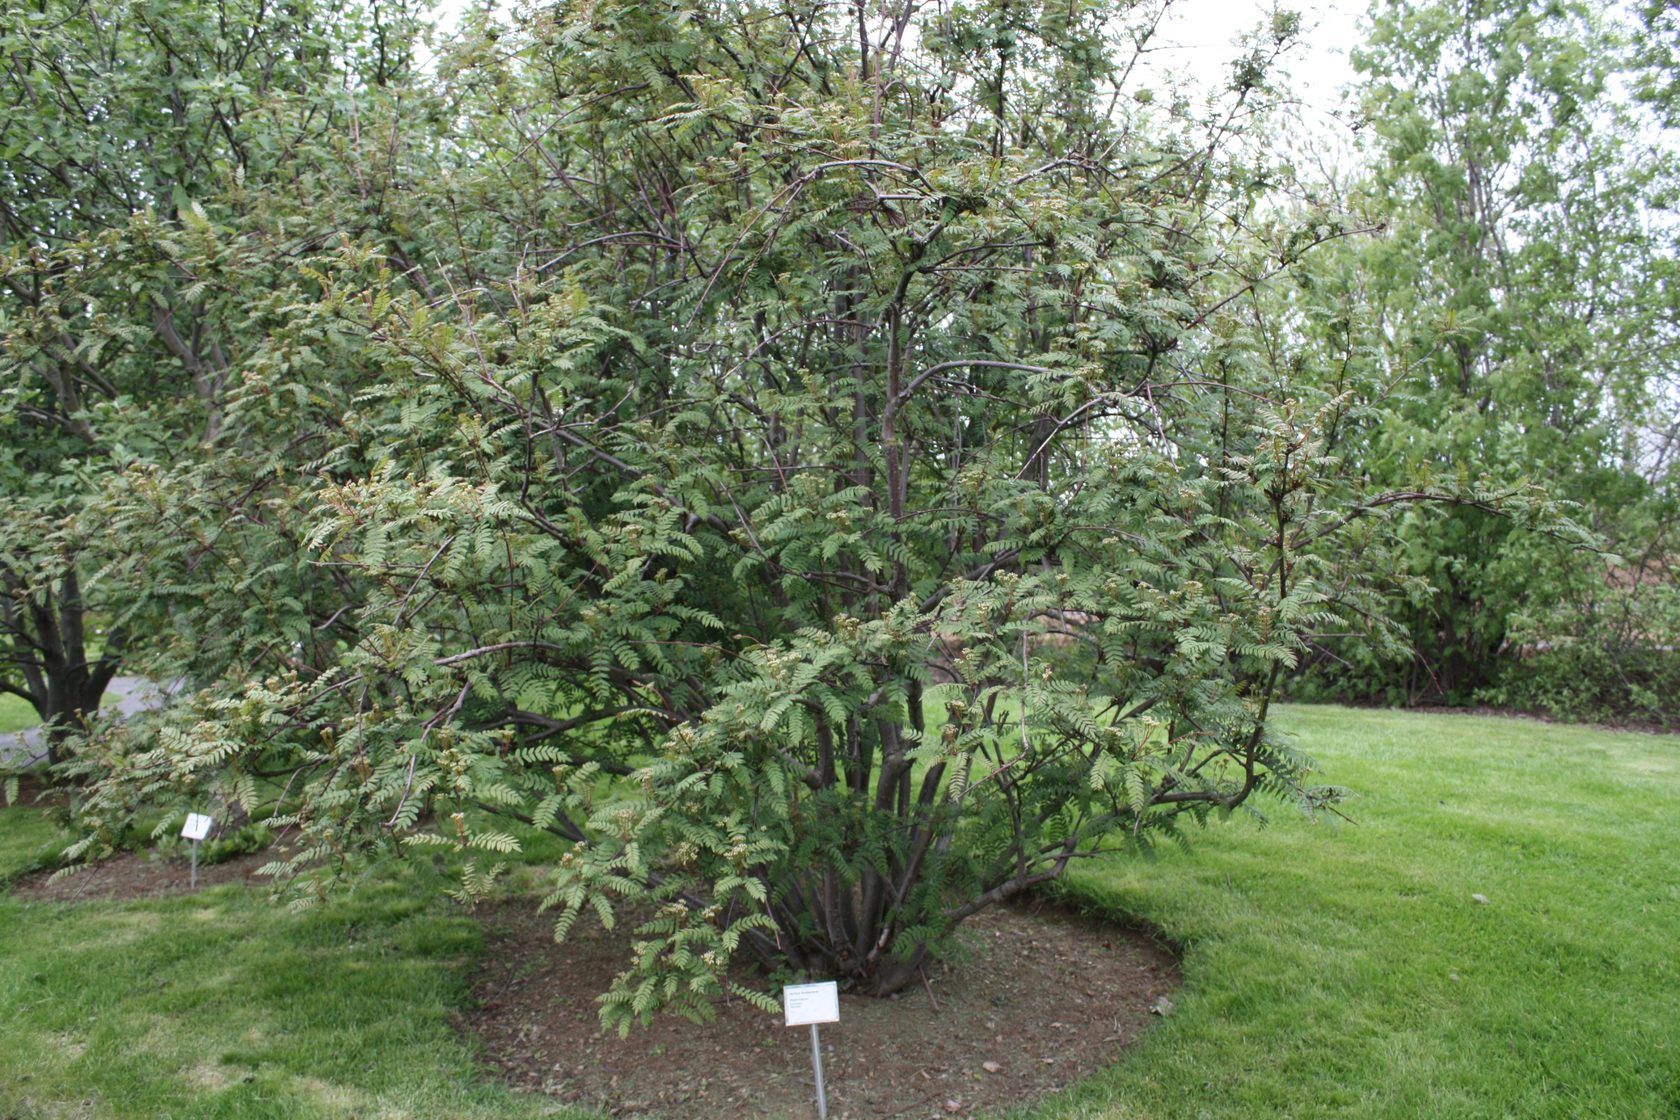 Sorbus frutescens